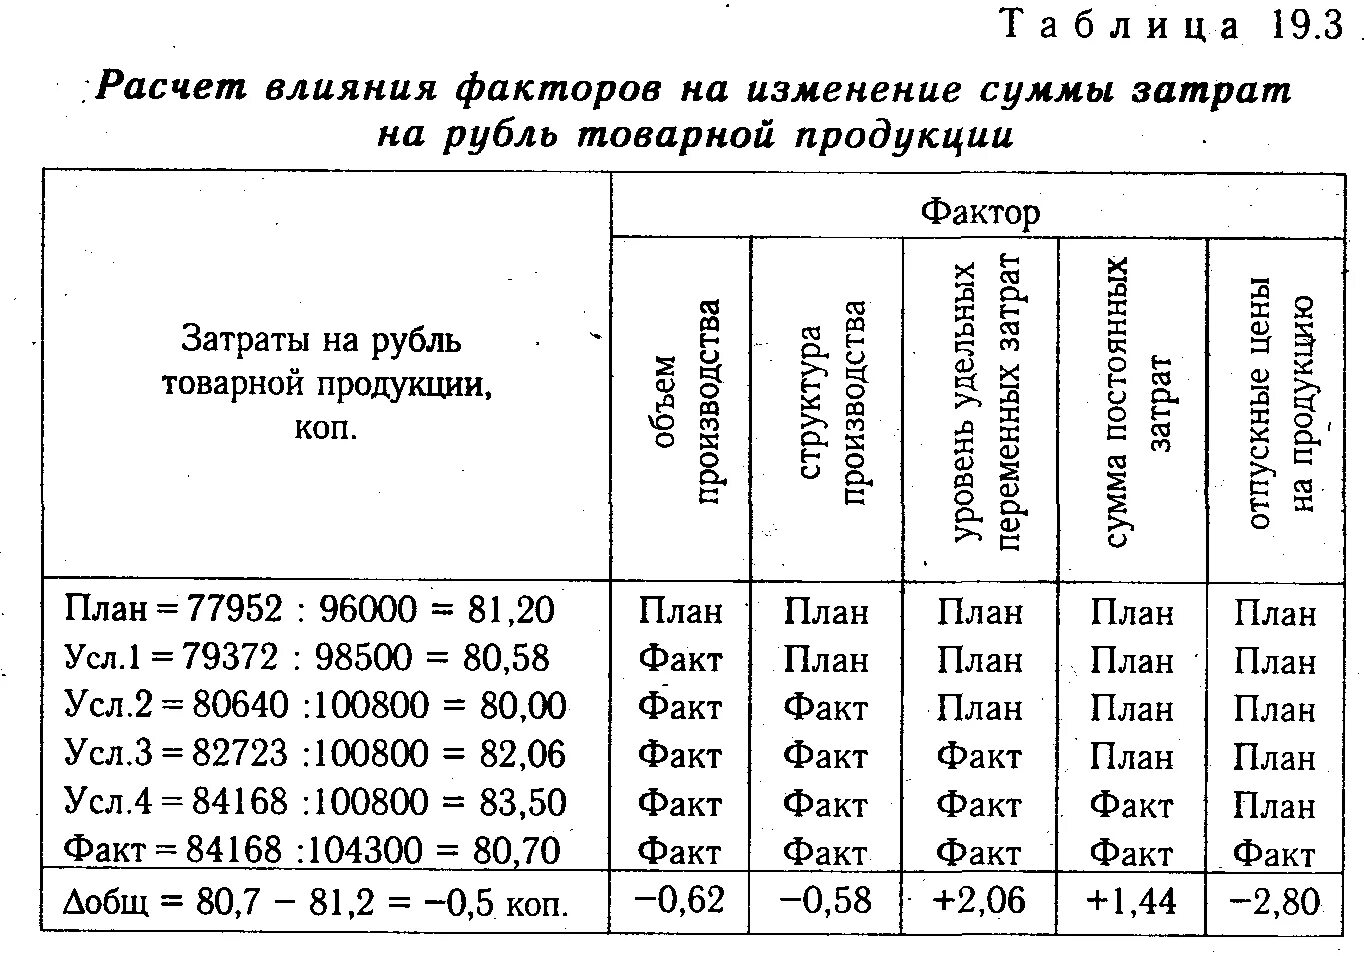 Определить затраты на рубль товарной продукции. Анализ затрат на 1 рубль продукции. Анализ затрат на 1 руб. Товарной продукции. Влияние факторов на изменения затрат. Расчет влияния факторов.